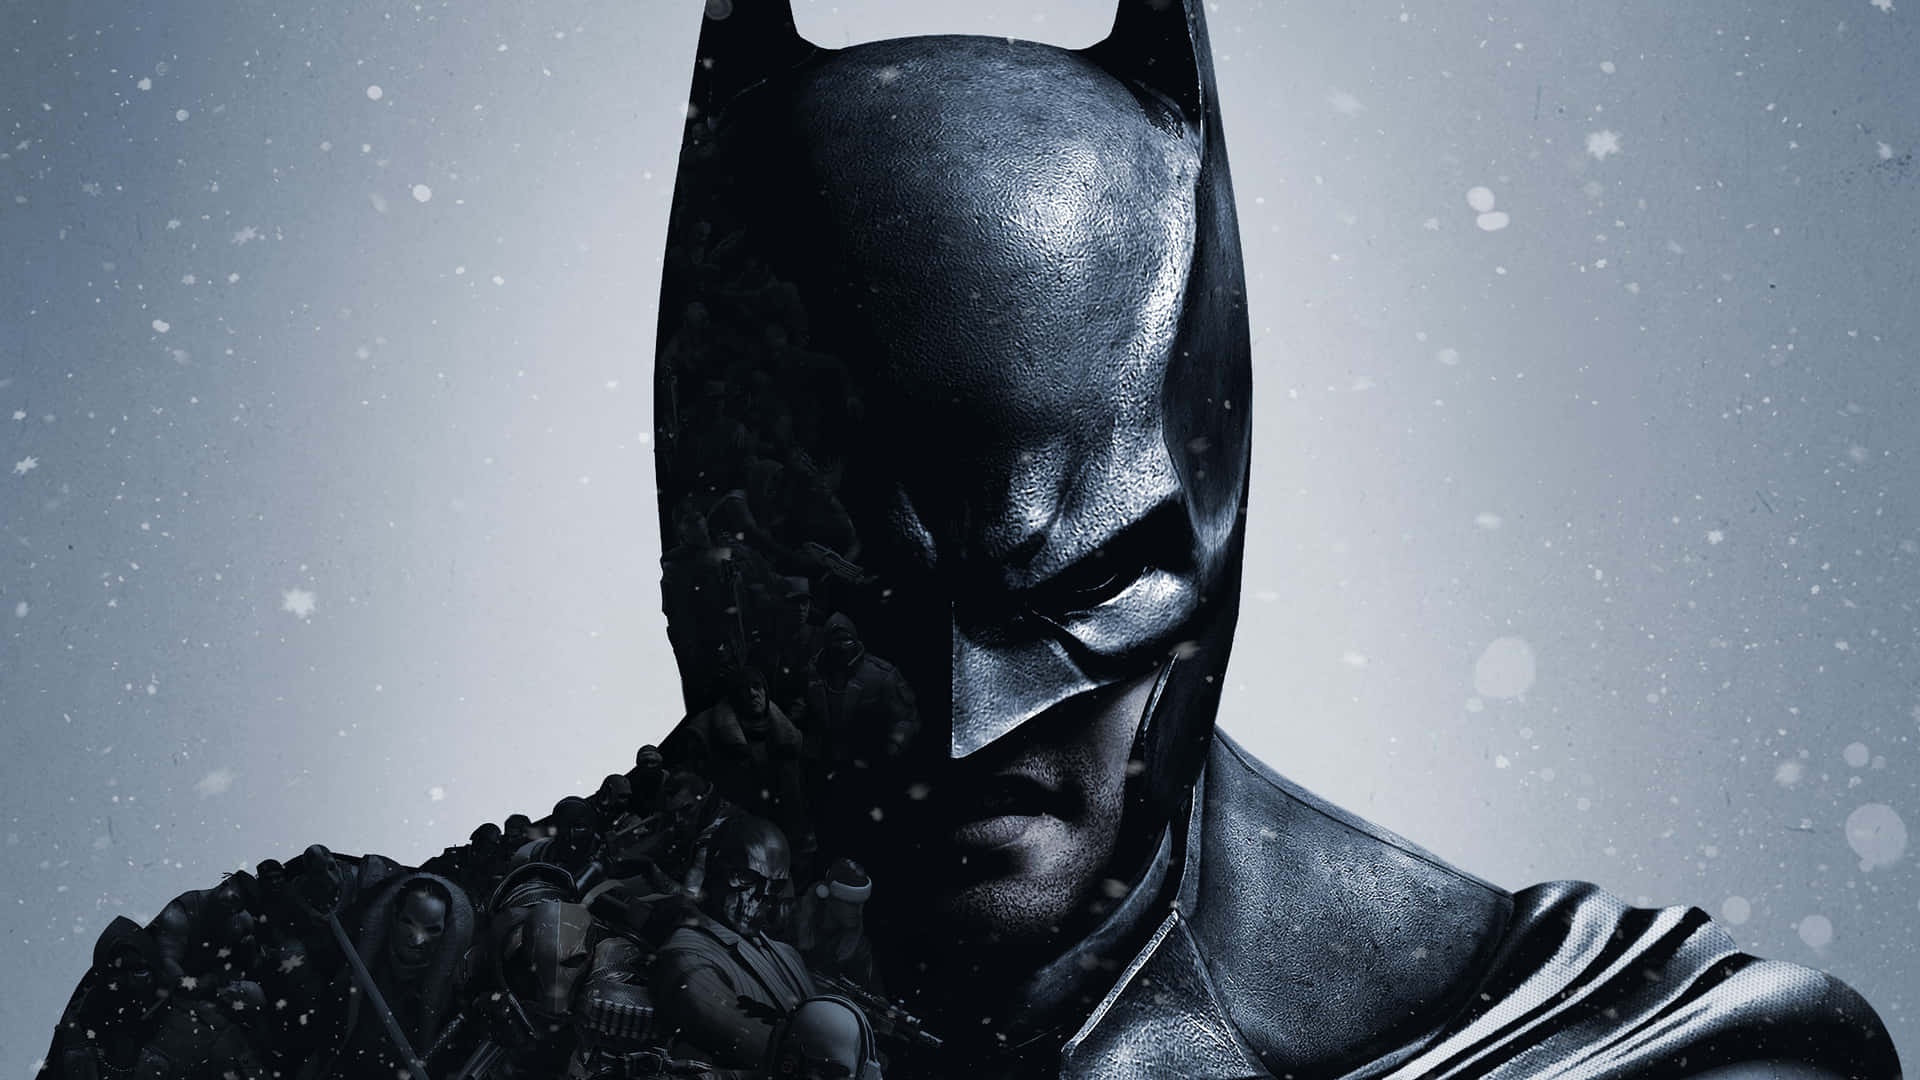 Imagemdo Batman Em Close-up Durante A Chuva Como Papel De Parede De Computador Ou Celular.